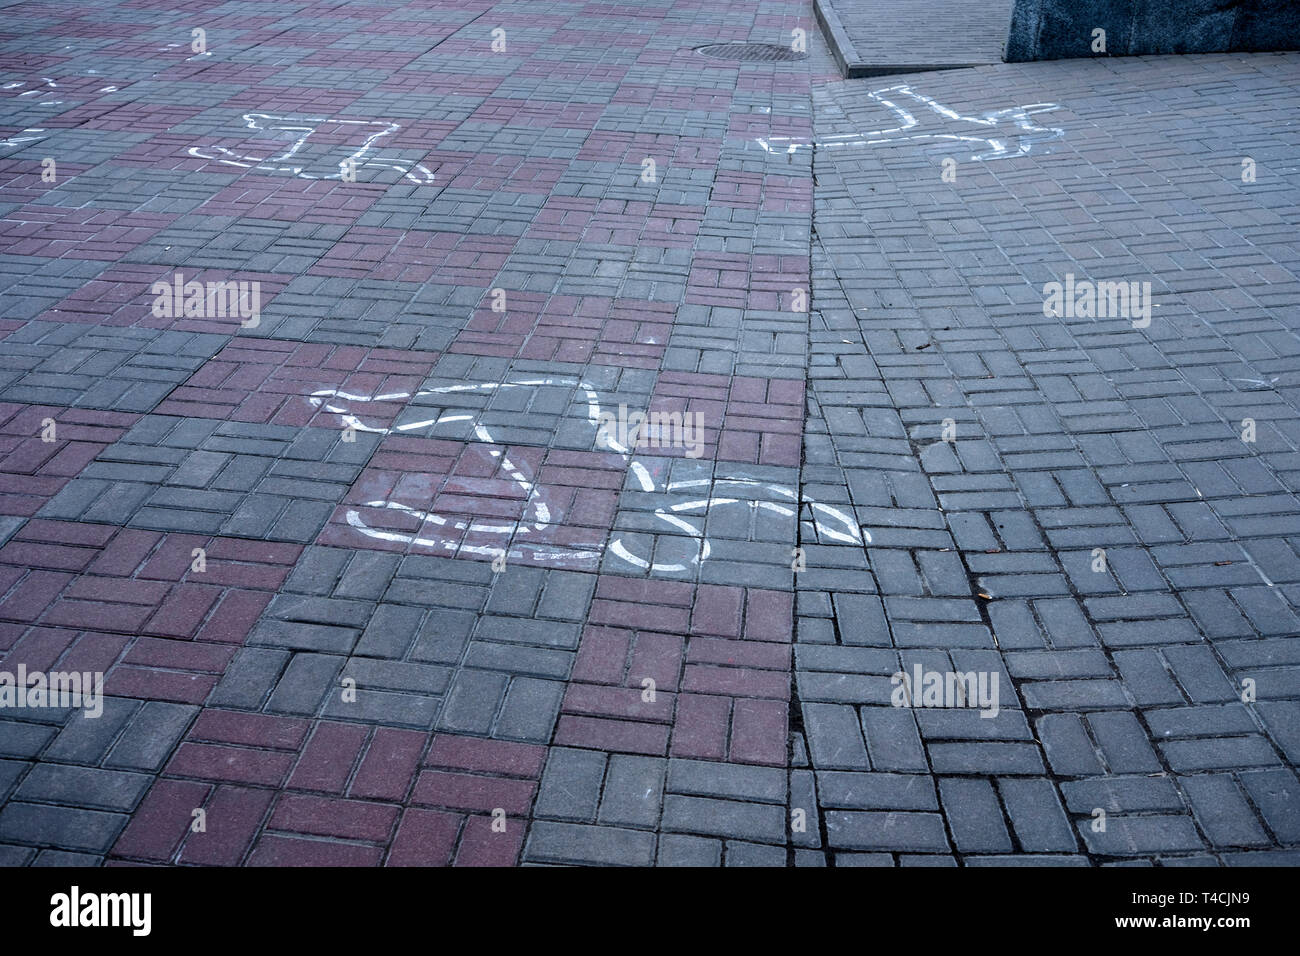 Présente sur le terrain montrent la position des cadavres tués dans l'émeutes 2013/14 à Kiev, juste en face le stade Dynamo Kiev, lors des protestations à Banque D'Images